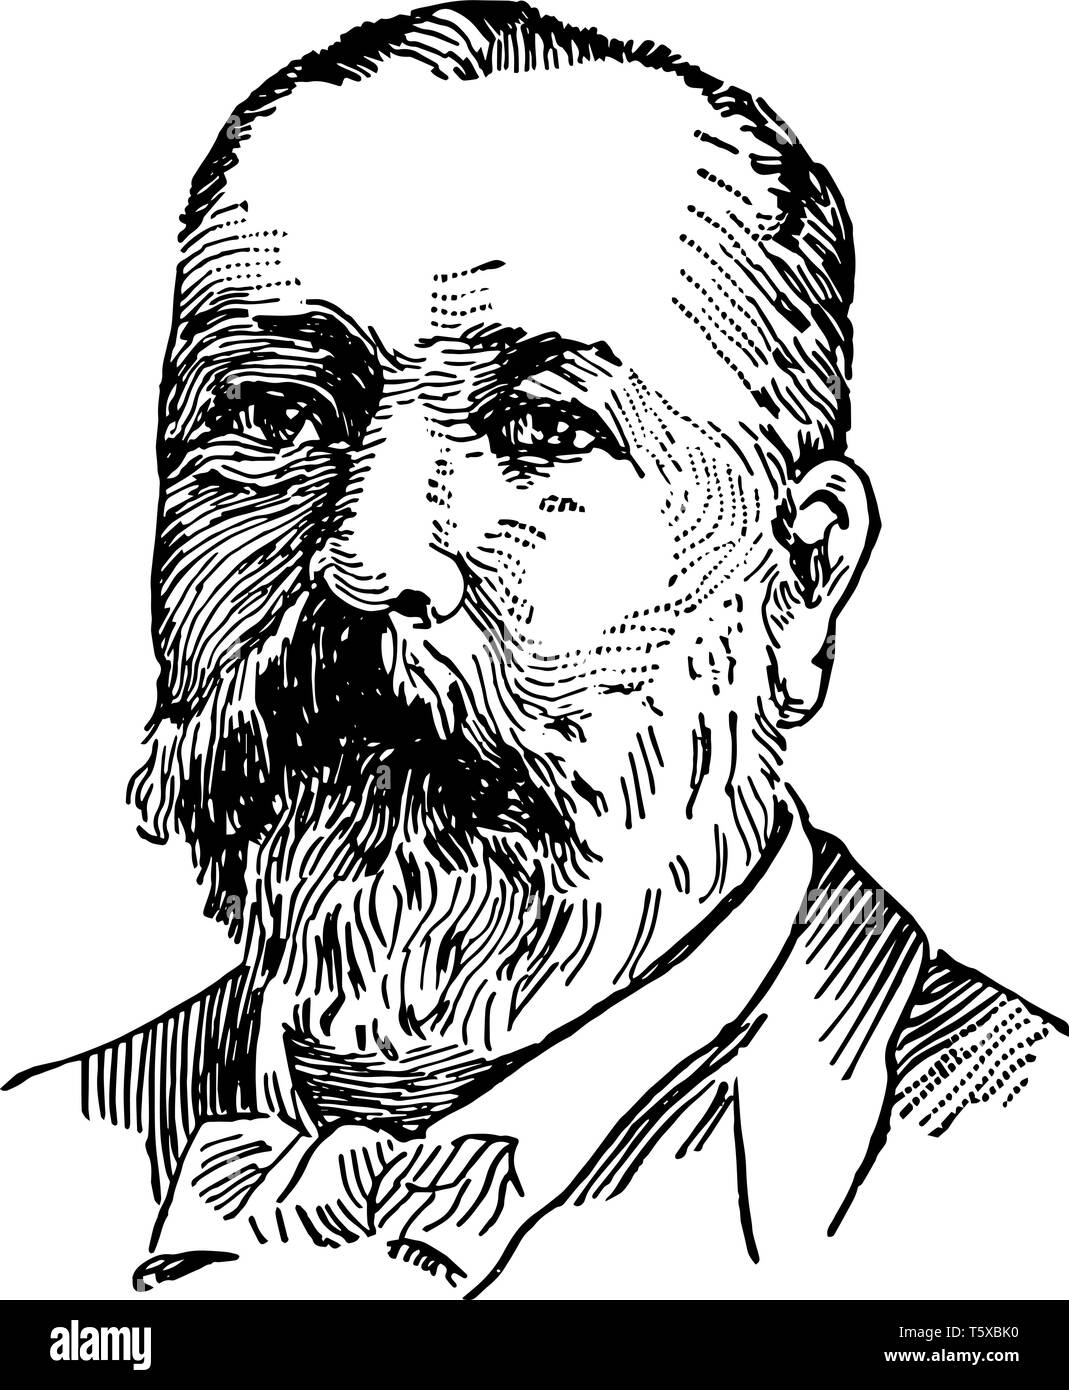 James Biddle Eustis 1834 à 1899, il a été un sénateur des Etats-Unis à partir de la Louisiane vintage dessin ou gravure illustration Illustration de Vecteur